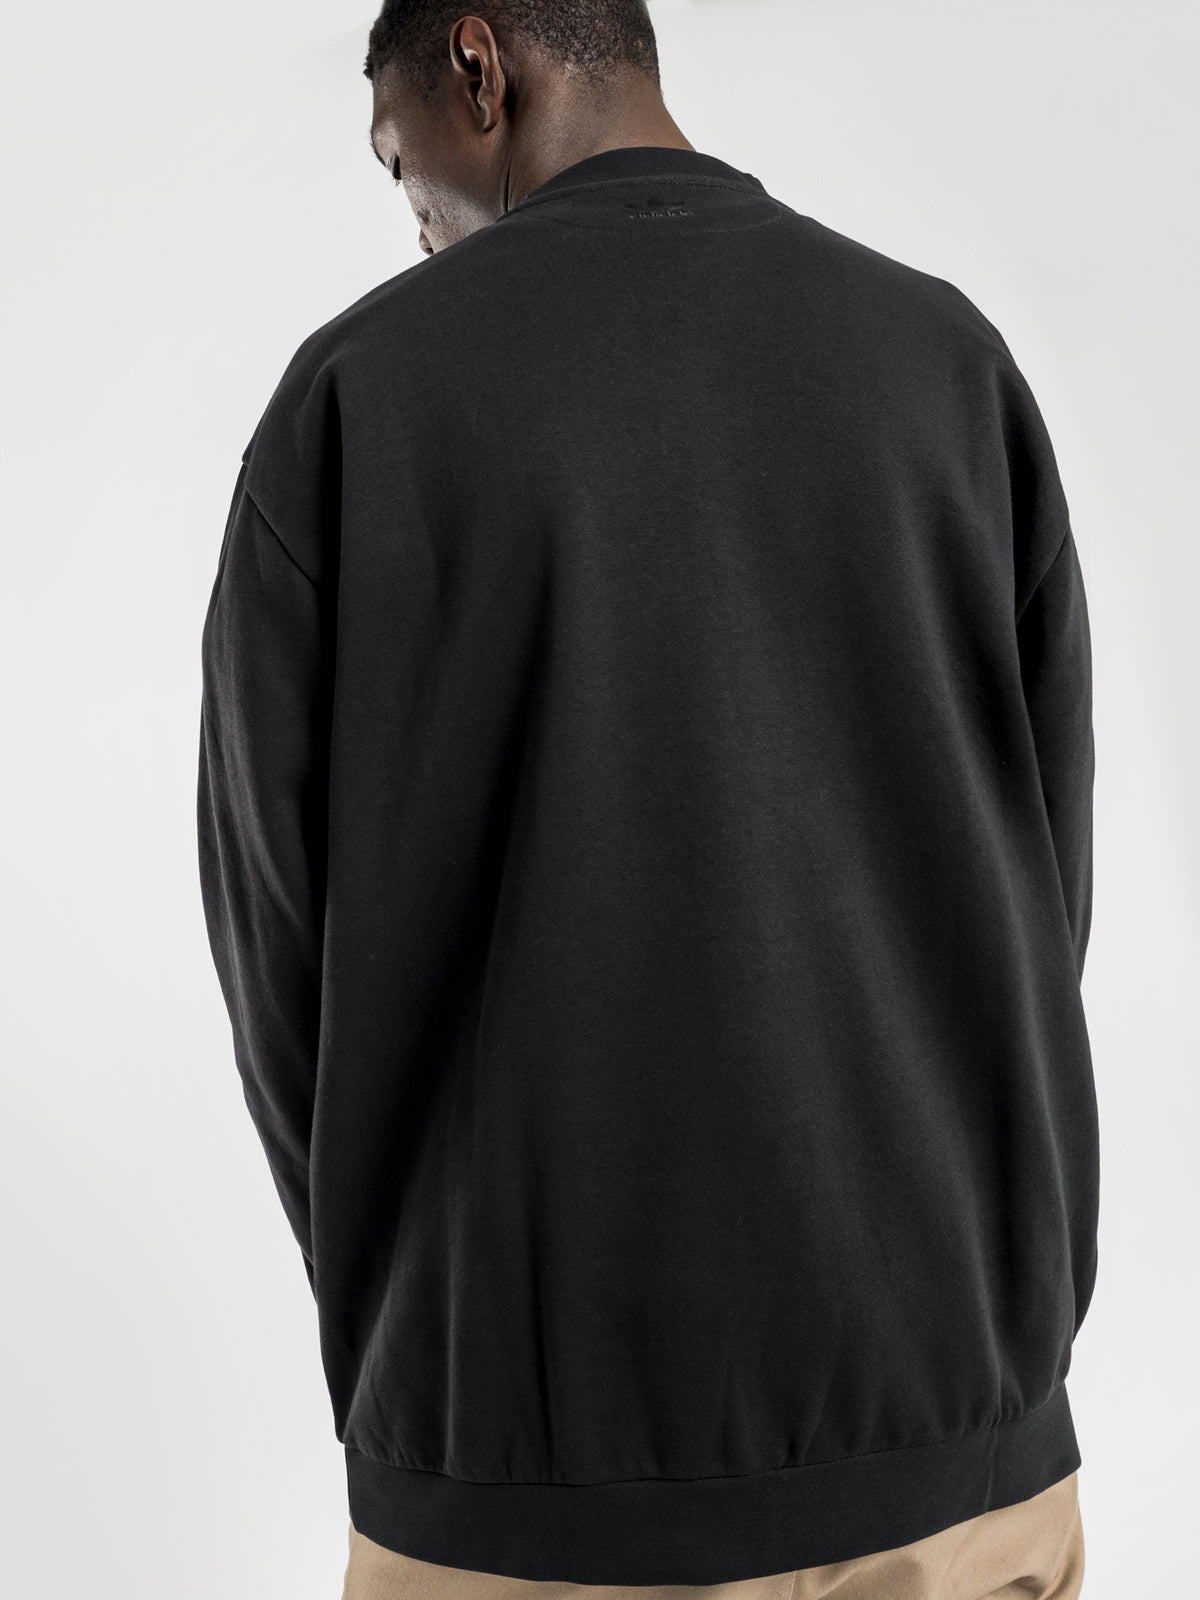 3D Trefoil Graphic Crew Sweatshirt in Black